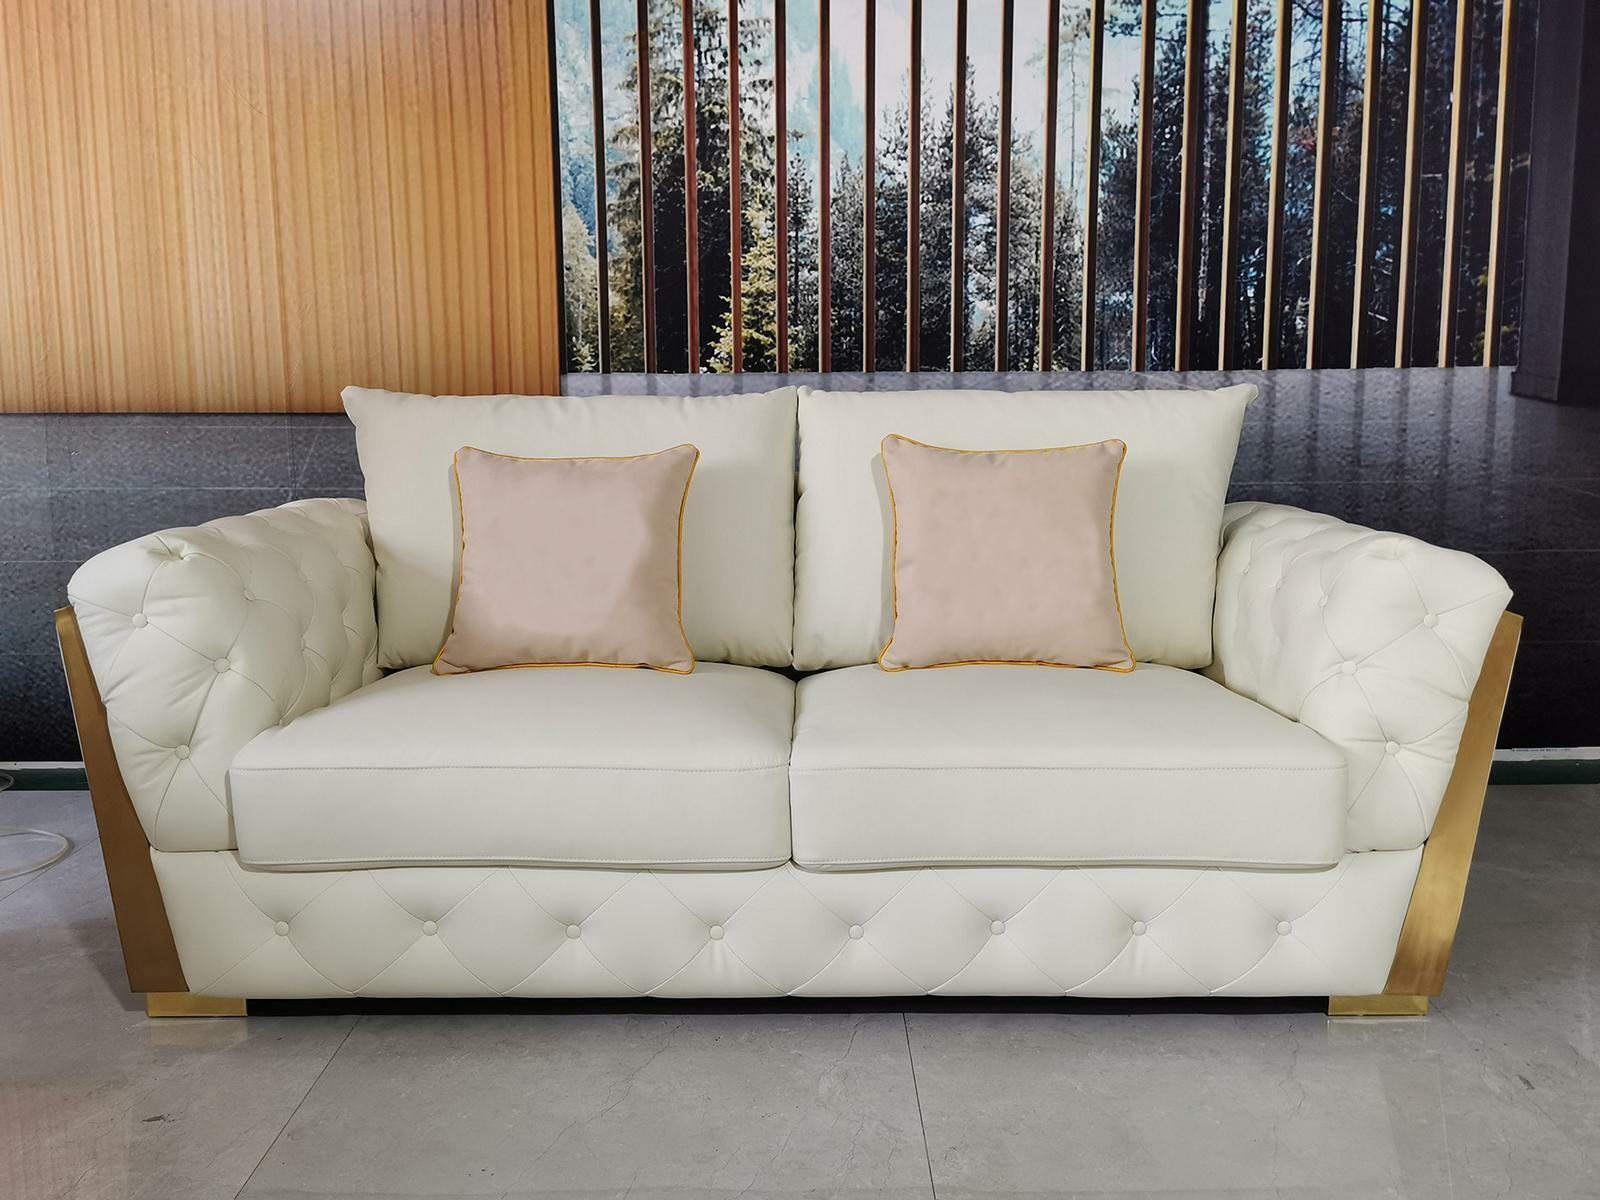 Design Zweisitzer Lounge Möbel 2 Sitzer Sofa Couch Polster Club Sofas Couchen